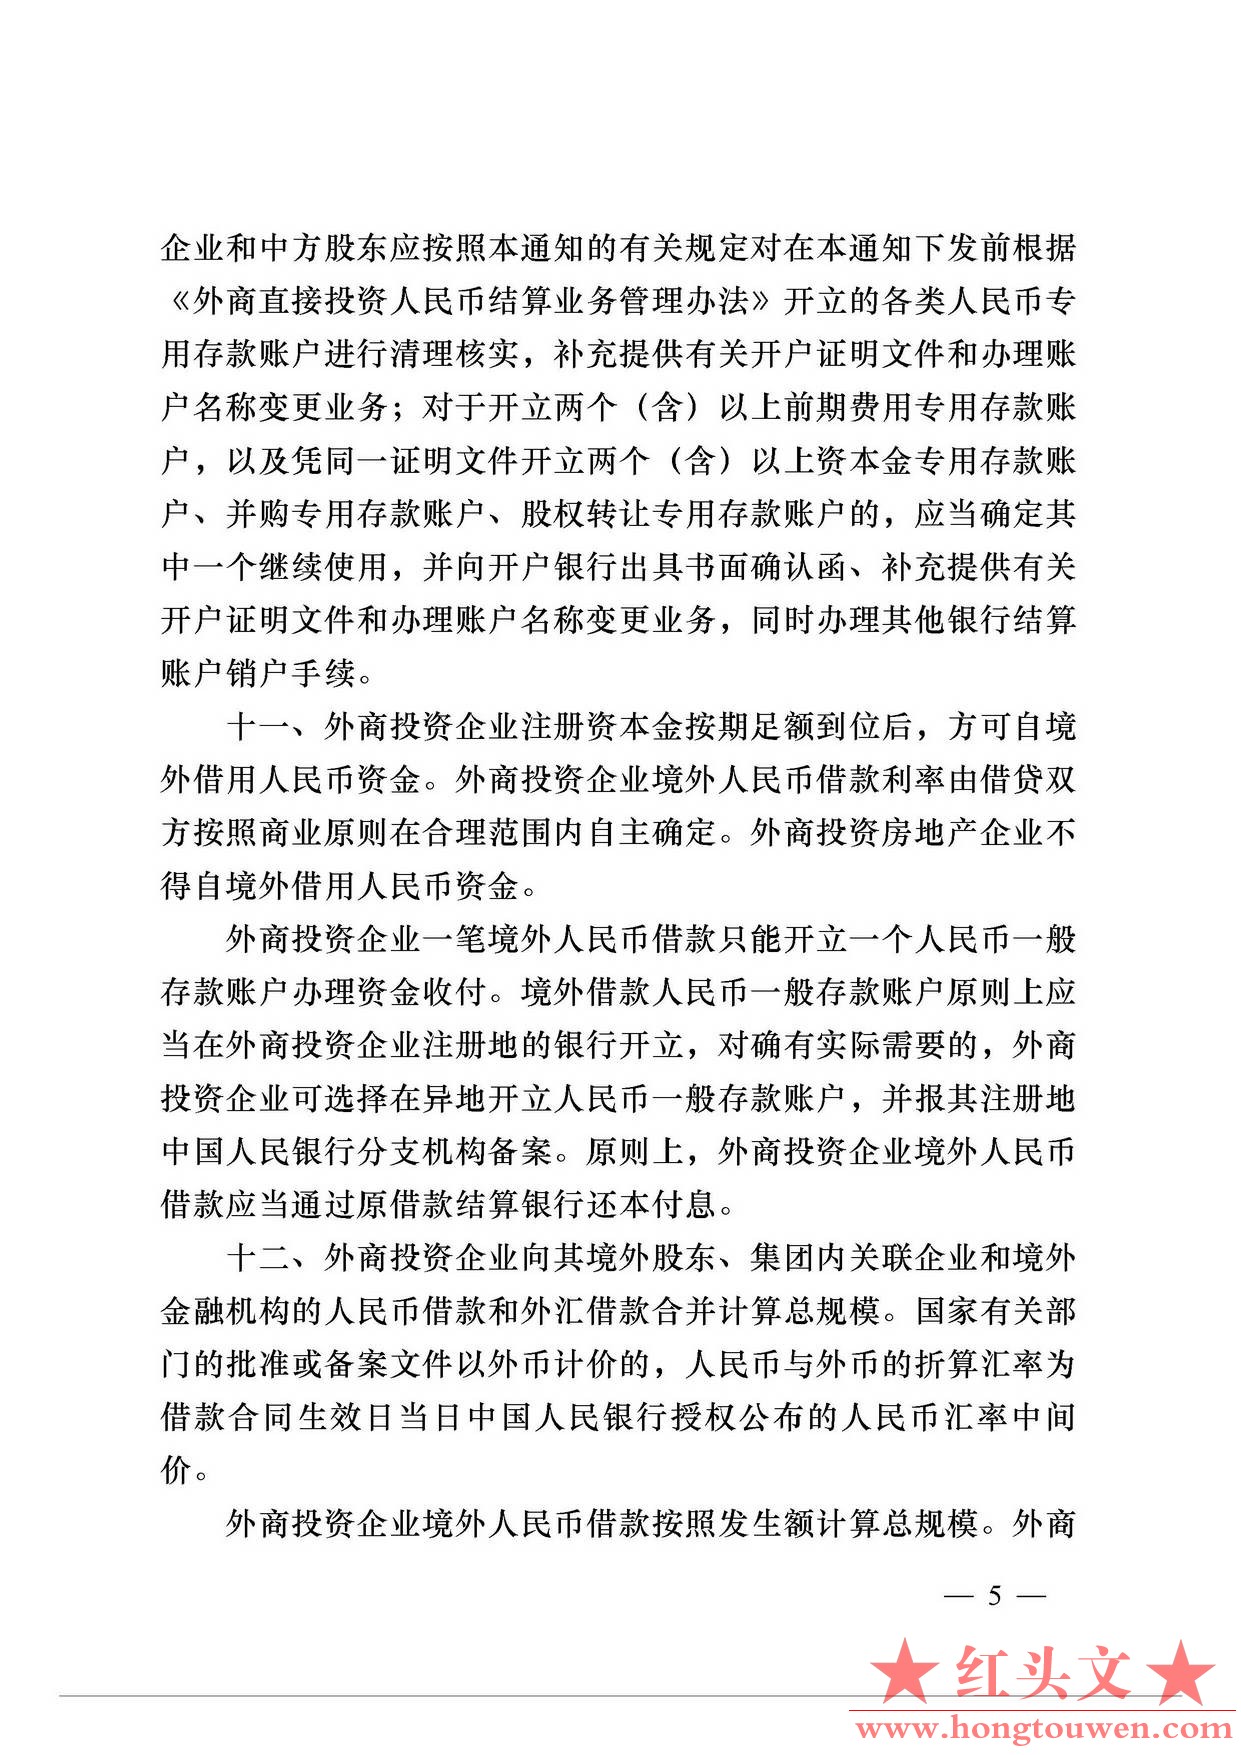 银发[2012]165号-中国人民银行关于明确外商直接投资人民币结算业务操作细则的通知_页.jpg